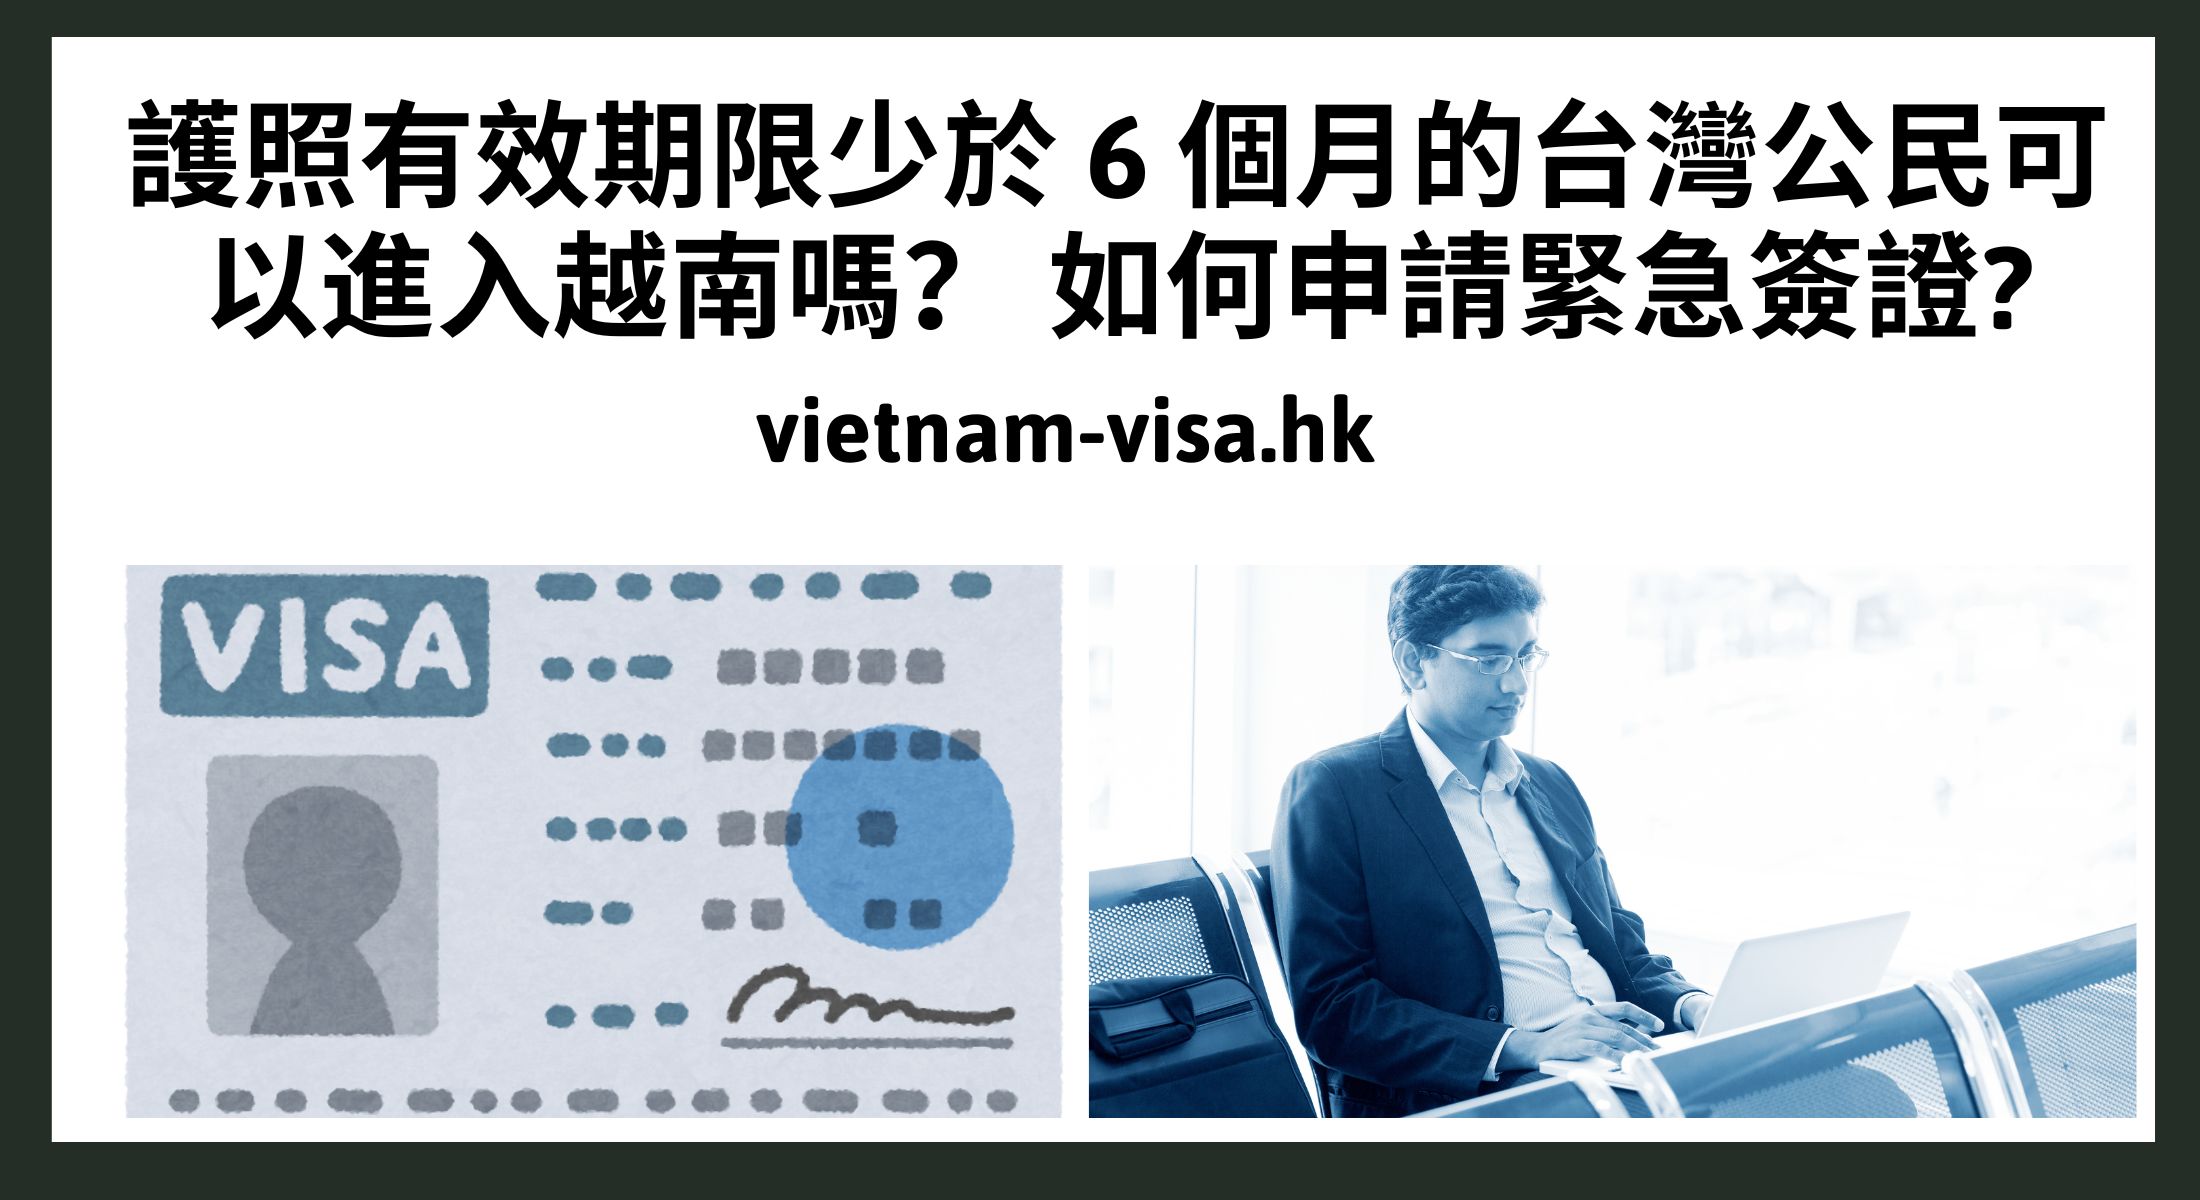 護照有效期限少於 6 個月的台灣公民可以進入越南嗎？ 如何申請緊急簽證?